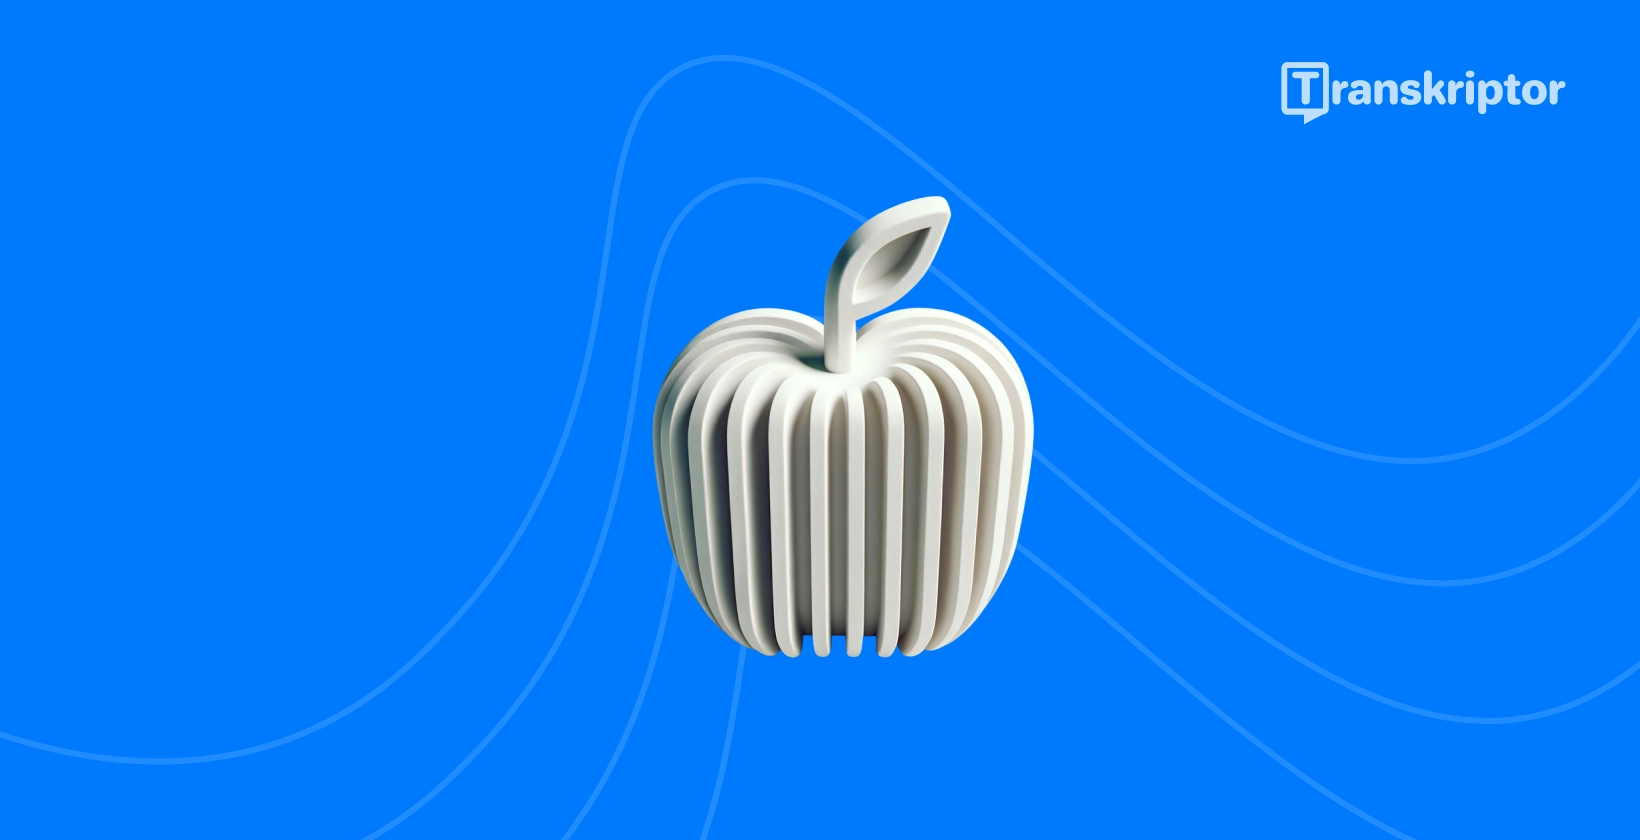 Stiliseret æble med lydbølger repræsenterer de bedste transskriptionsapps, der er tilgængelige for iPhone brugere.